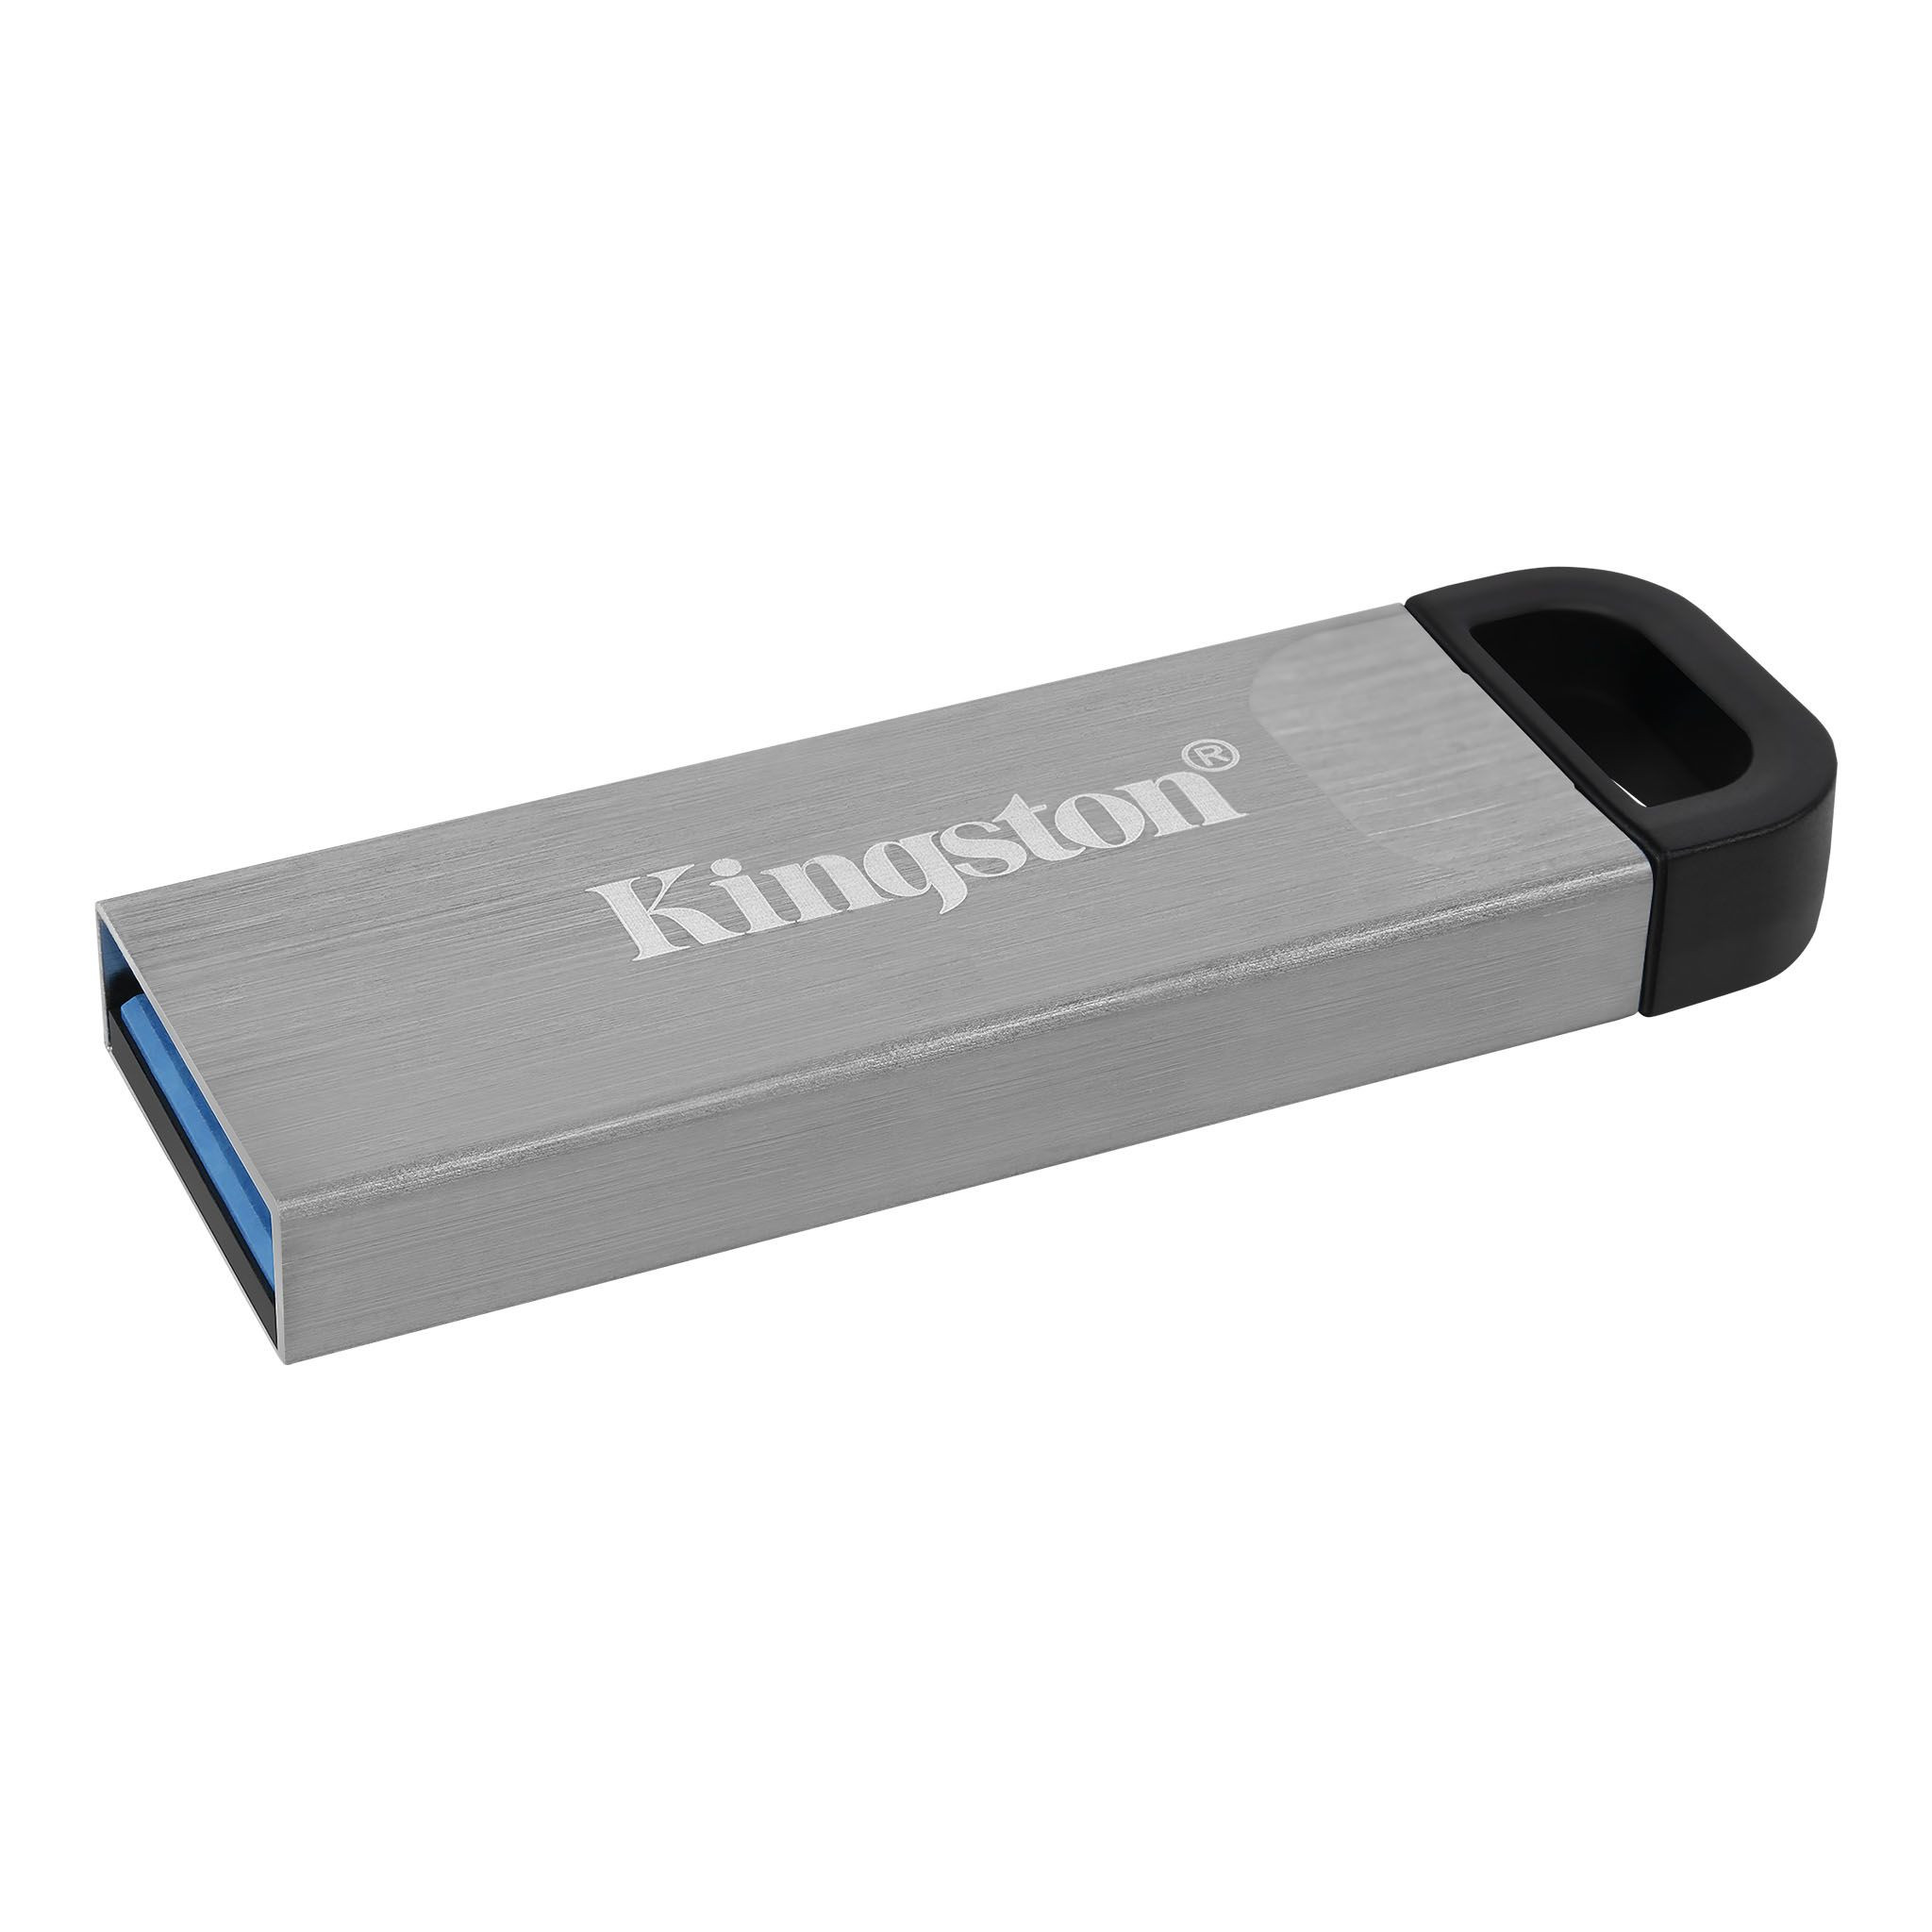 Kingston - DTKN-128GB -   